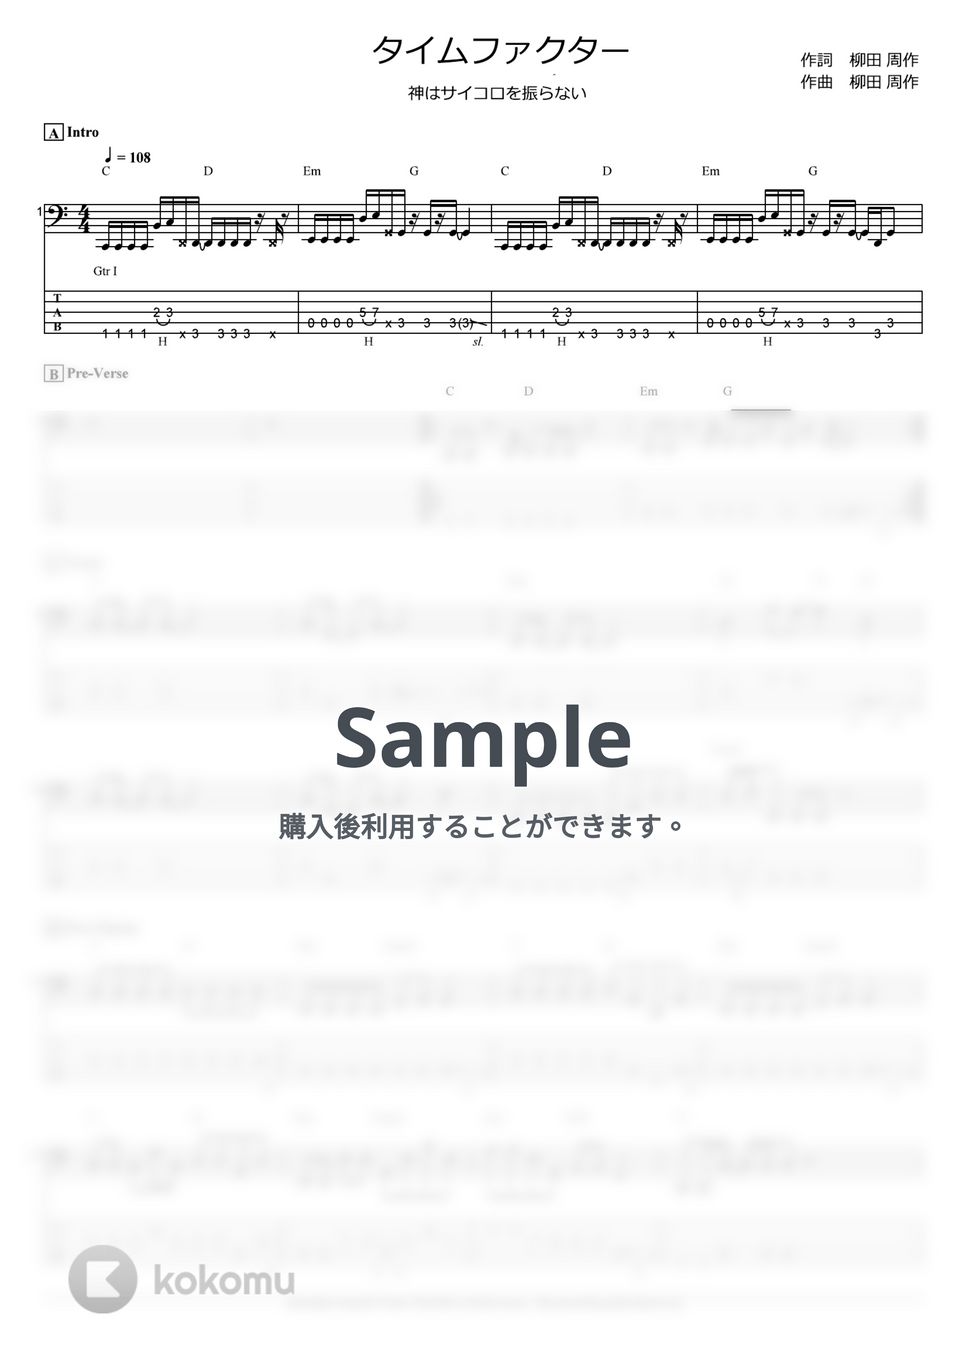 ワールドトリガー - タイムファクター (神はサイコロを振らない / ベース Tab譜 5弦) by T's bass score